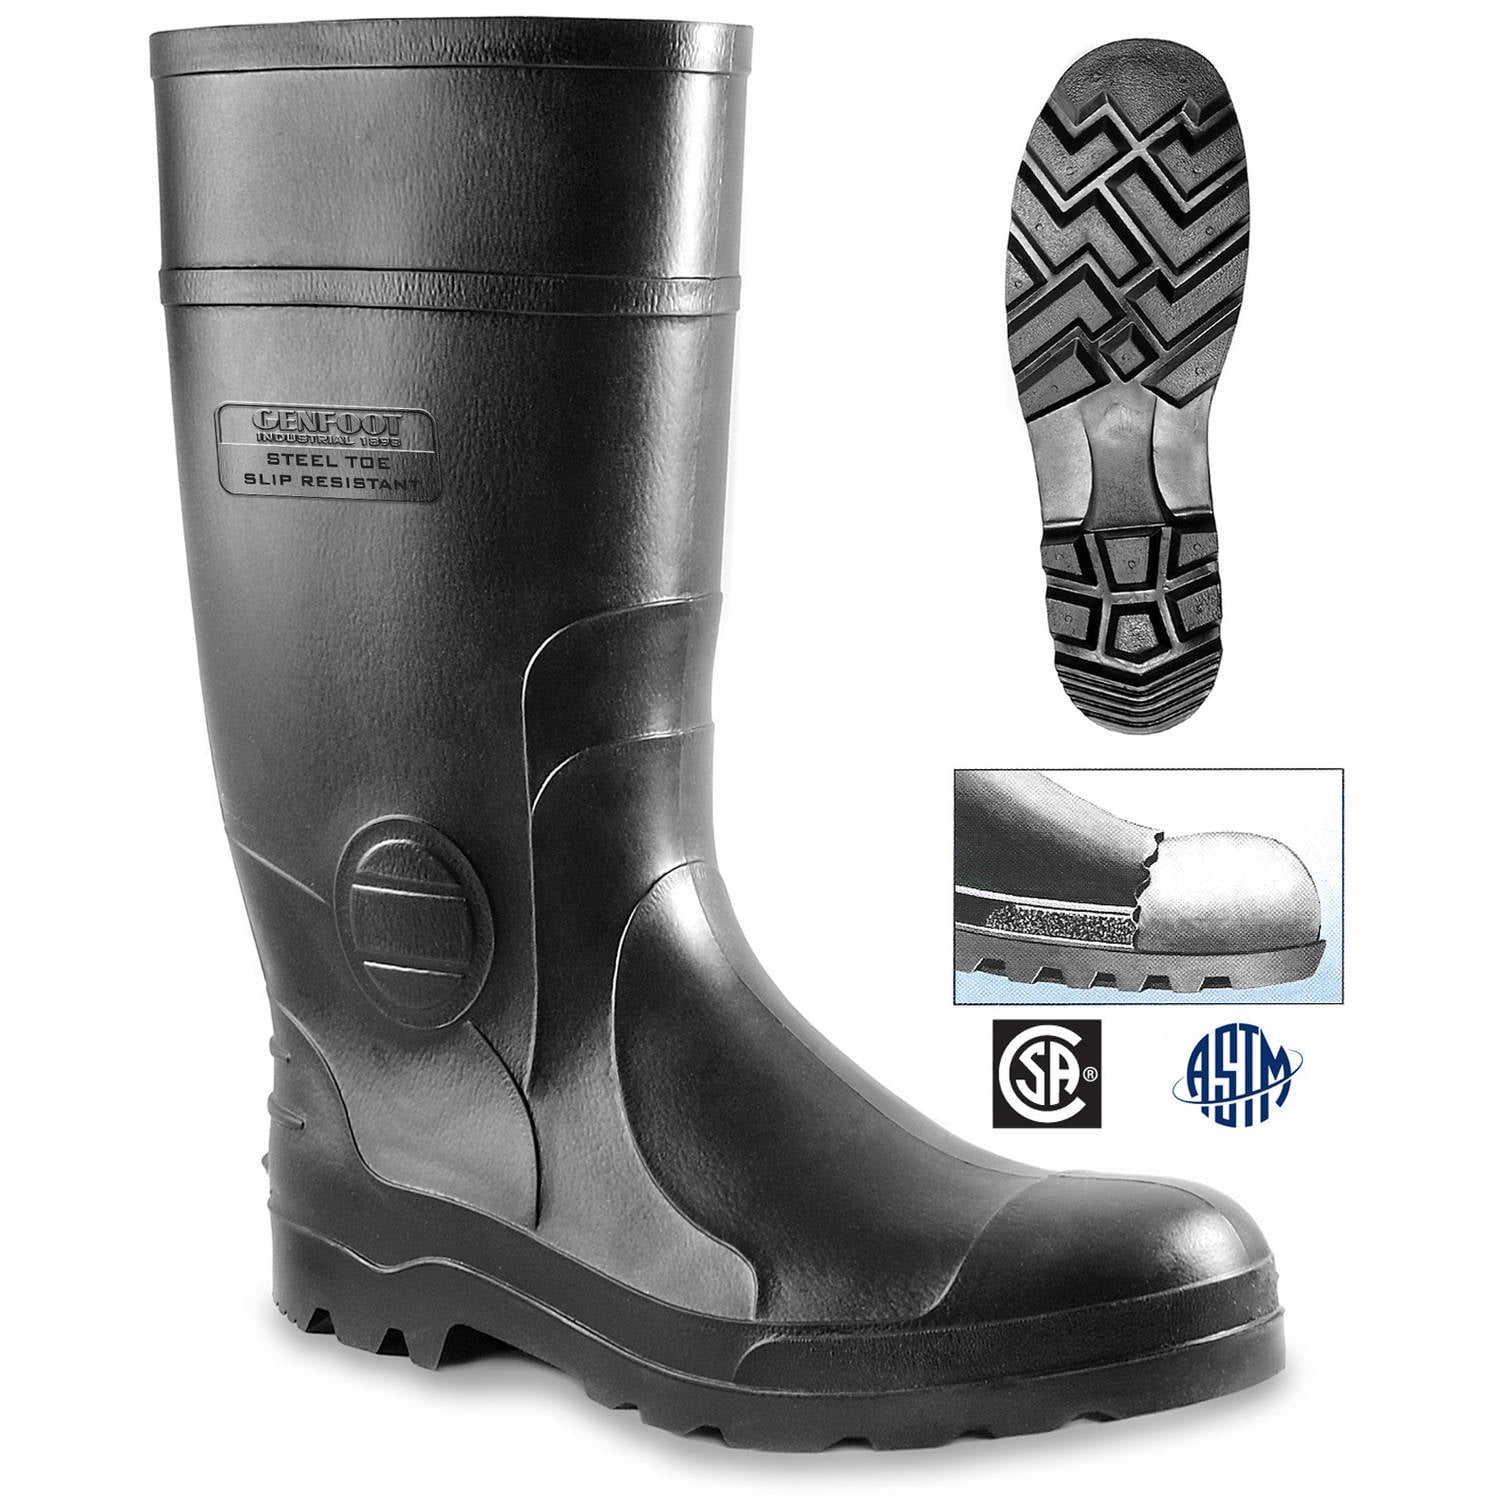 Genfoot Industrial Men's Steel Toe Knee Boot - Walmart.com